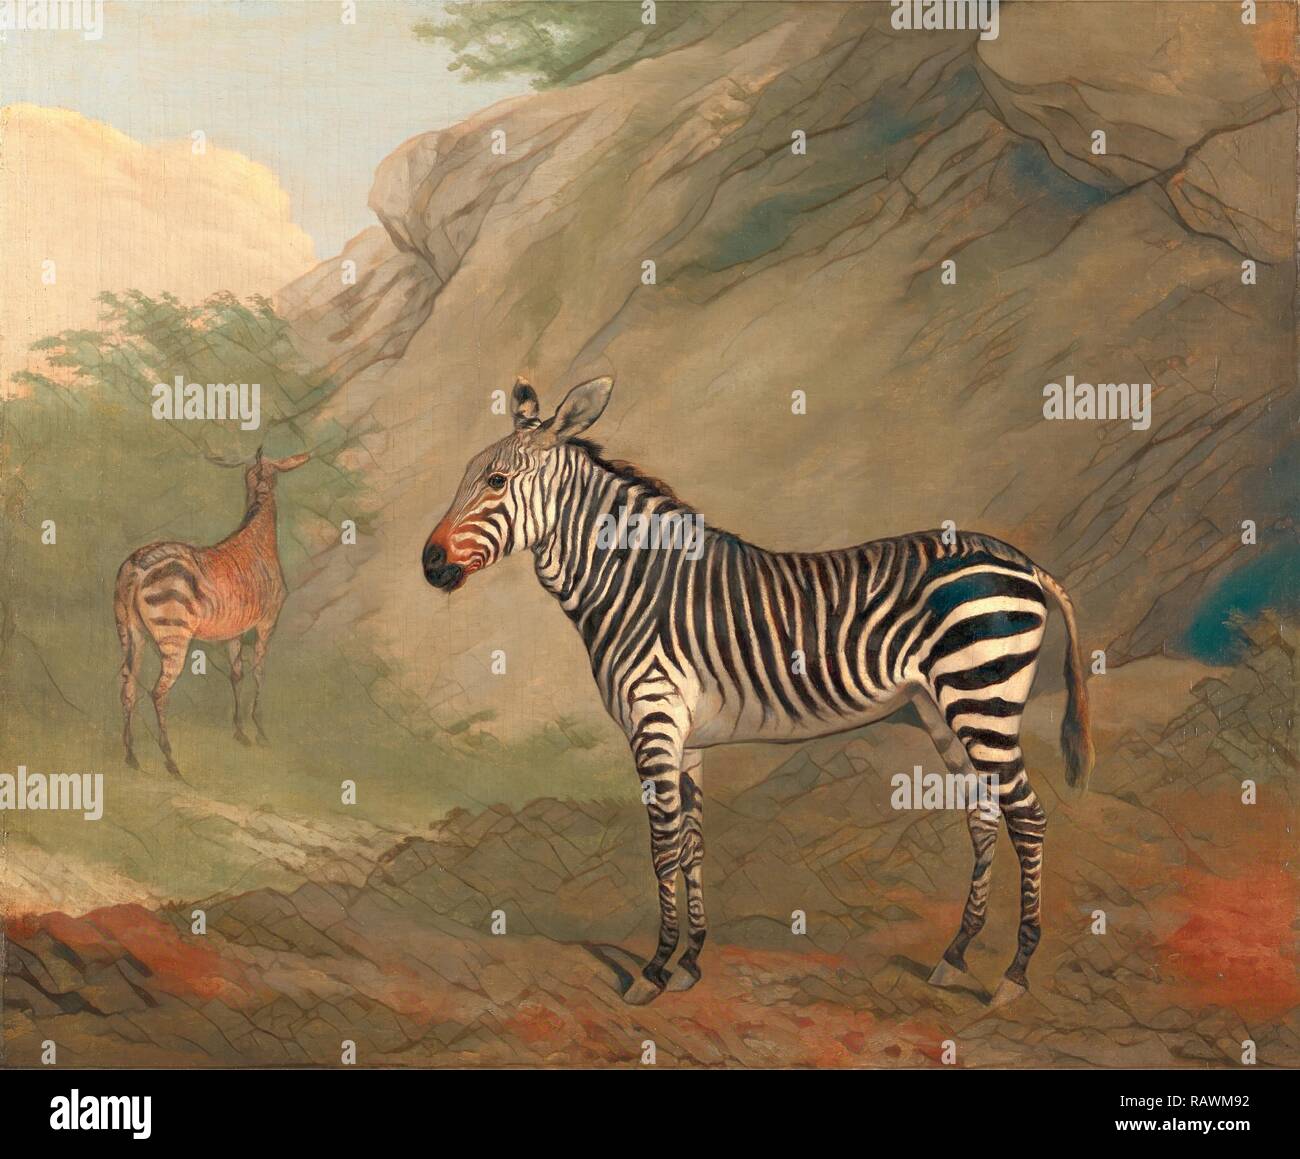 Jacques-Laurent Agasse, Zebra, 1767-1849, Suisse. Repensé par Gibon. L'art classique avec une touche moderne repensé Banque D'Images